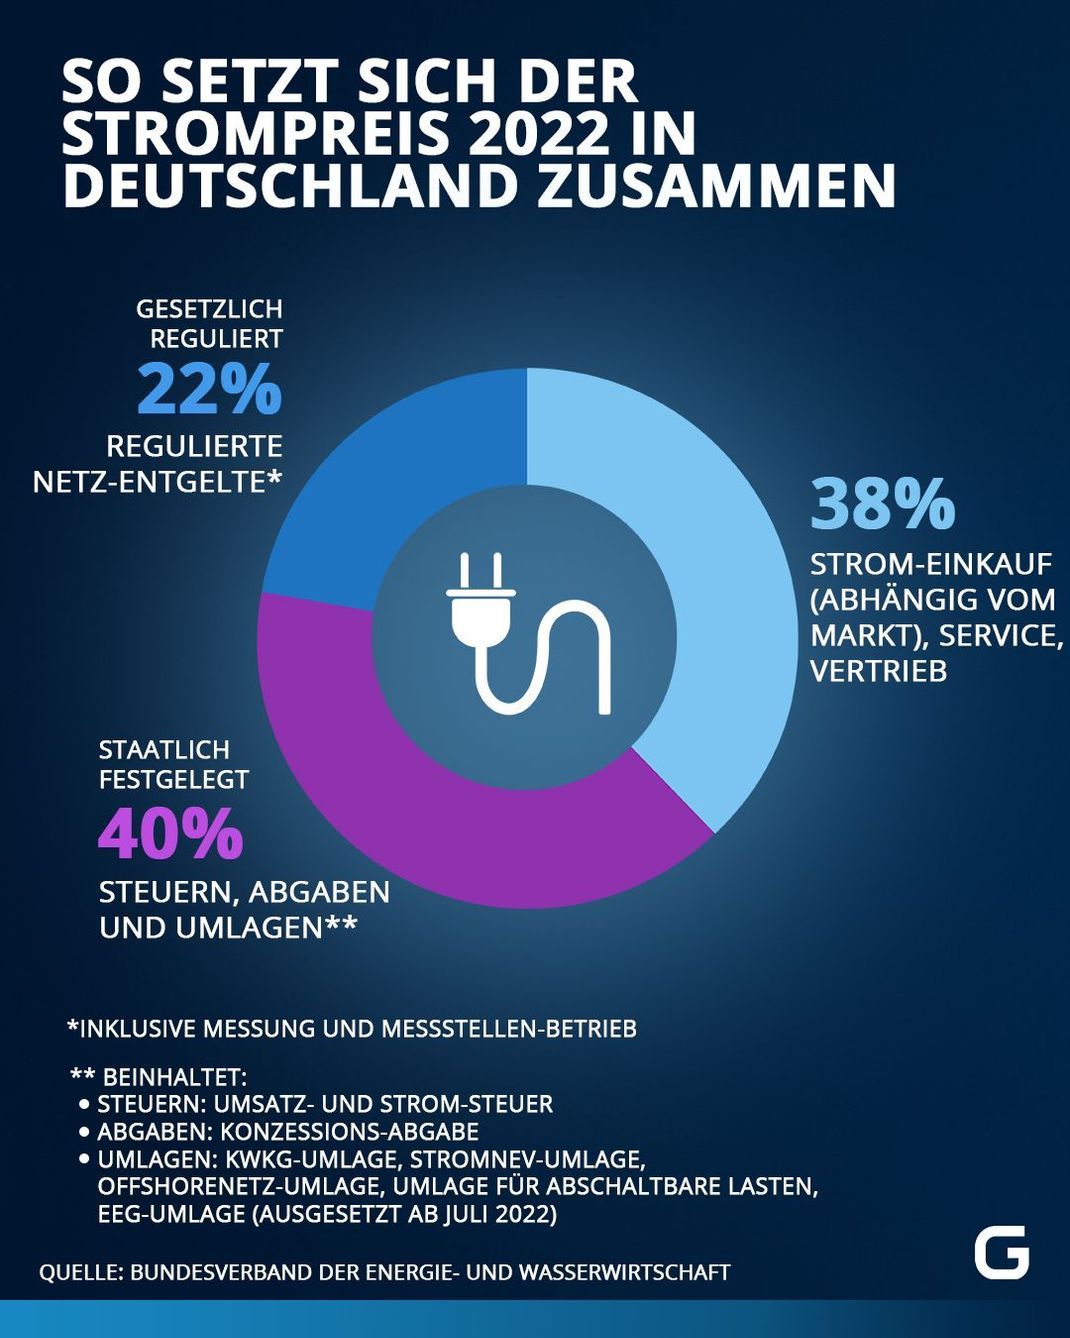 So setzt sich der Strompreis 2022 in Deutschland zusammen: 22 Prozent ist gesetzlich reguliert, 38 Prozent Strom-Einkauf, 40 Prozent Steuern, Abgaben und Umlagen. 